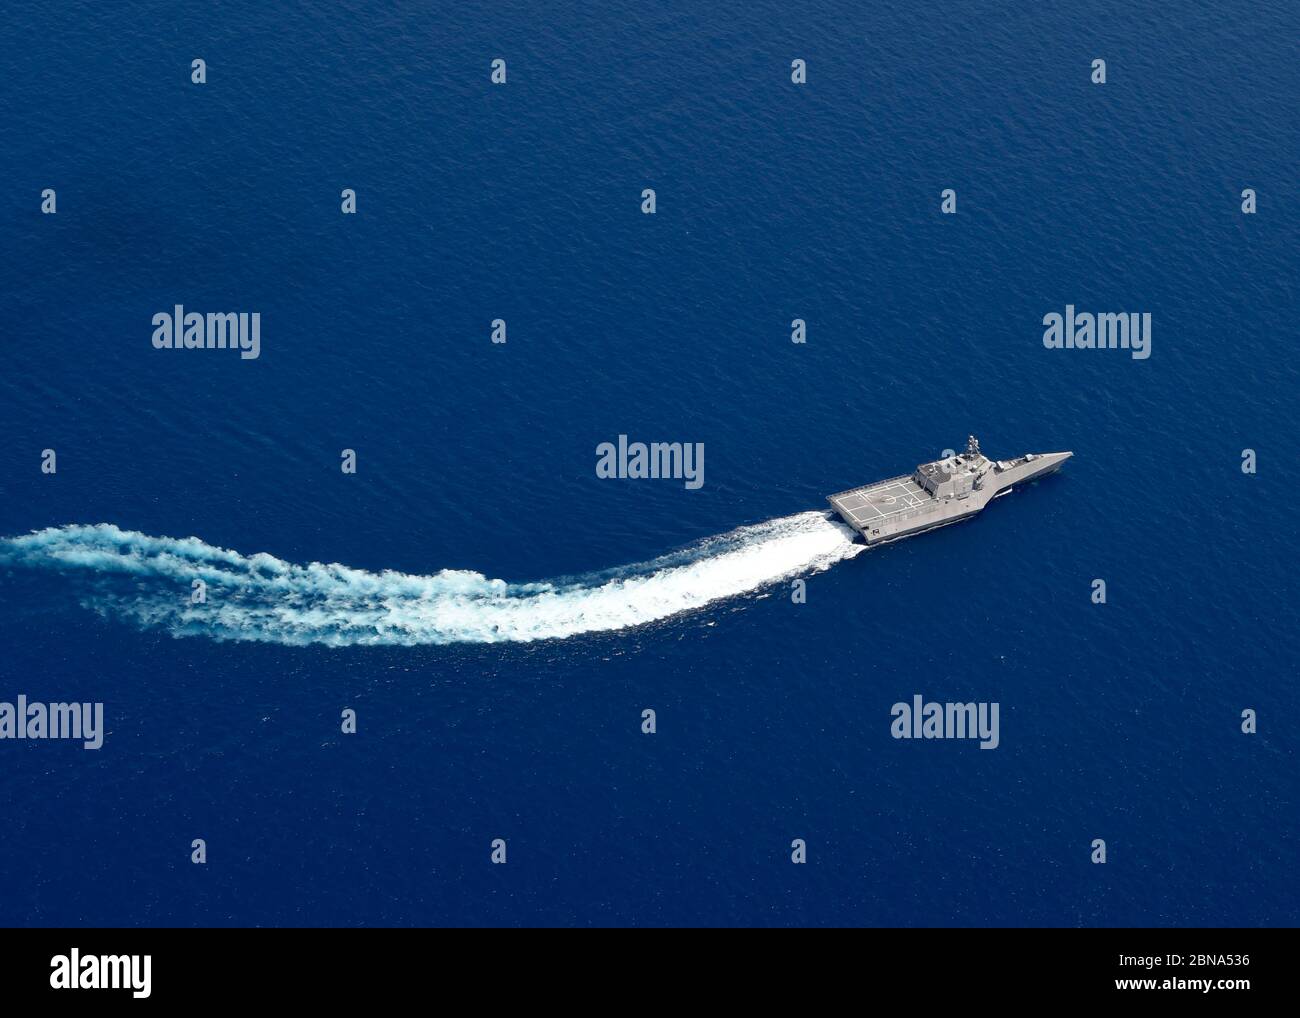 Das US Navy Independence-Variante Littoral Combat Ship USS Gabrielle Giffords patrouilliert in der Nähe des panamaisch-flagged Bohrschiffes, West Capella, das von chinesischen Truppen für Bohrungen in umstrittenen Gewässern am 12. Mai 2020 im Südchinesischen Meer schikaniert wurde. Stockfoto